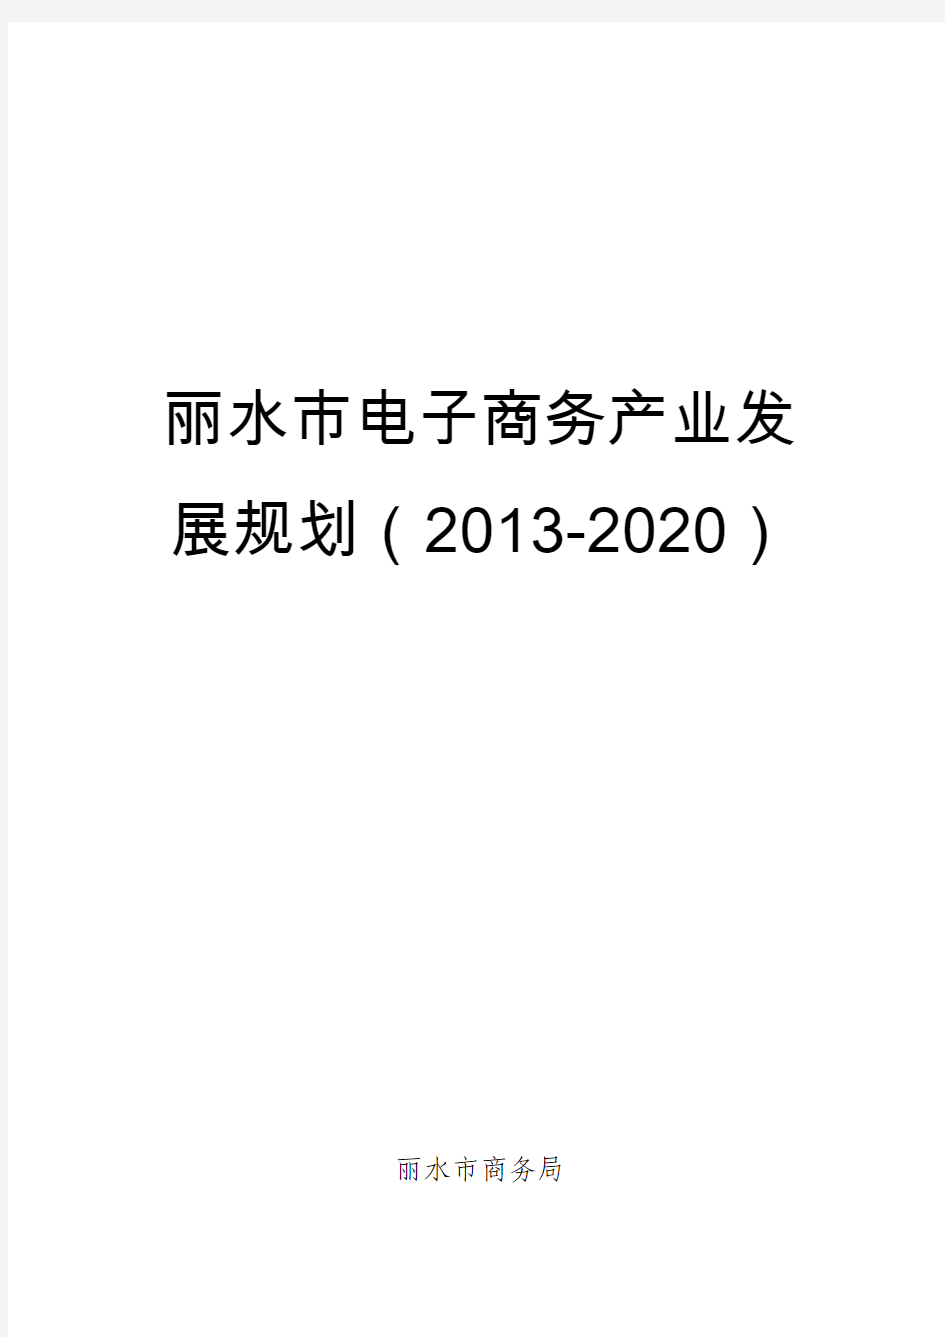 2丽水市电子商务产业发展规划(2013-2020)